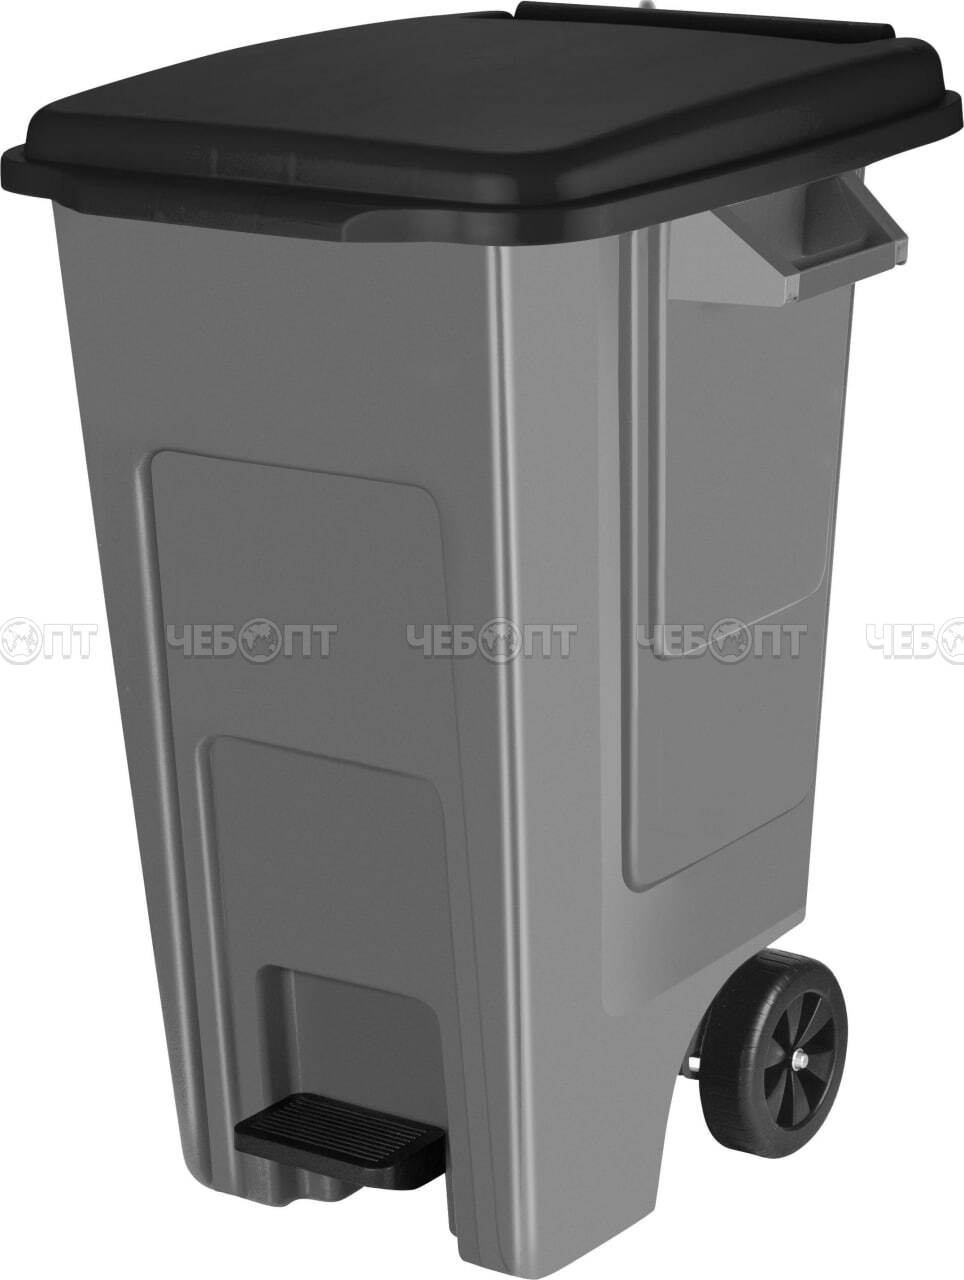 Бак пластиковый 100 л для мусора Freestyle с крышкой на колесах арт. SC7002 [1] ПЛАСТИК РЕПАБЛИК. ЧЕБОПТ.